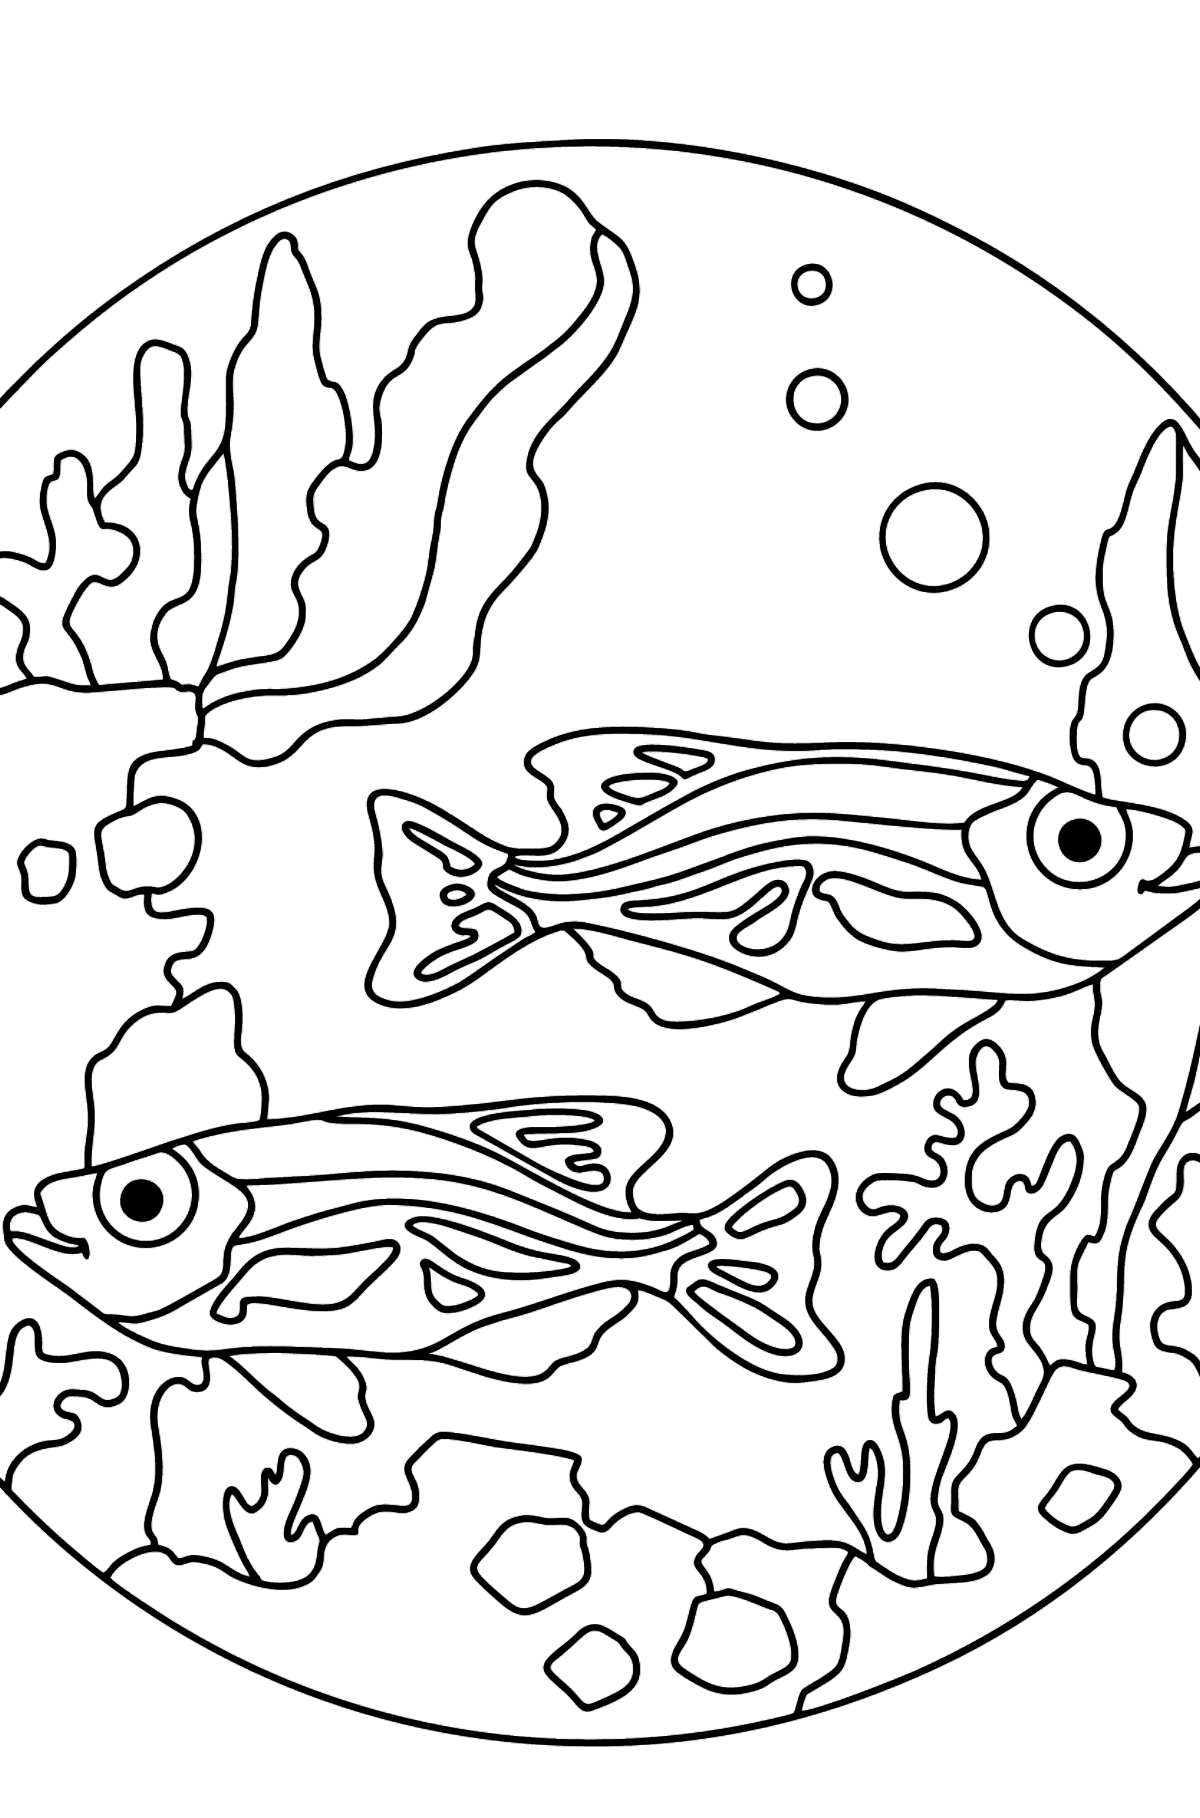 Coloriage - Les poissons nagent ensemble paisiblement - Coloriages pour les Enfants